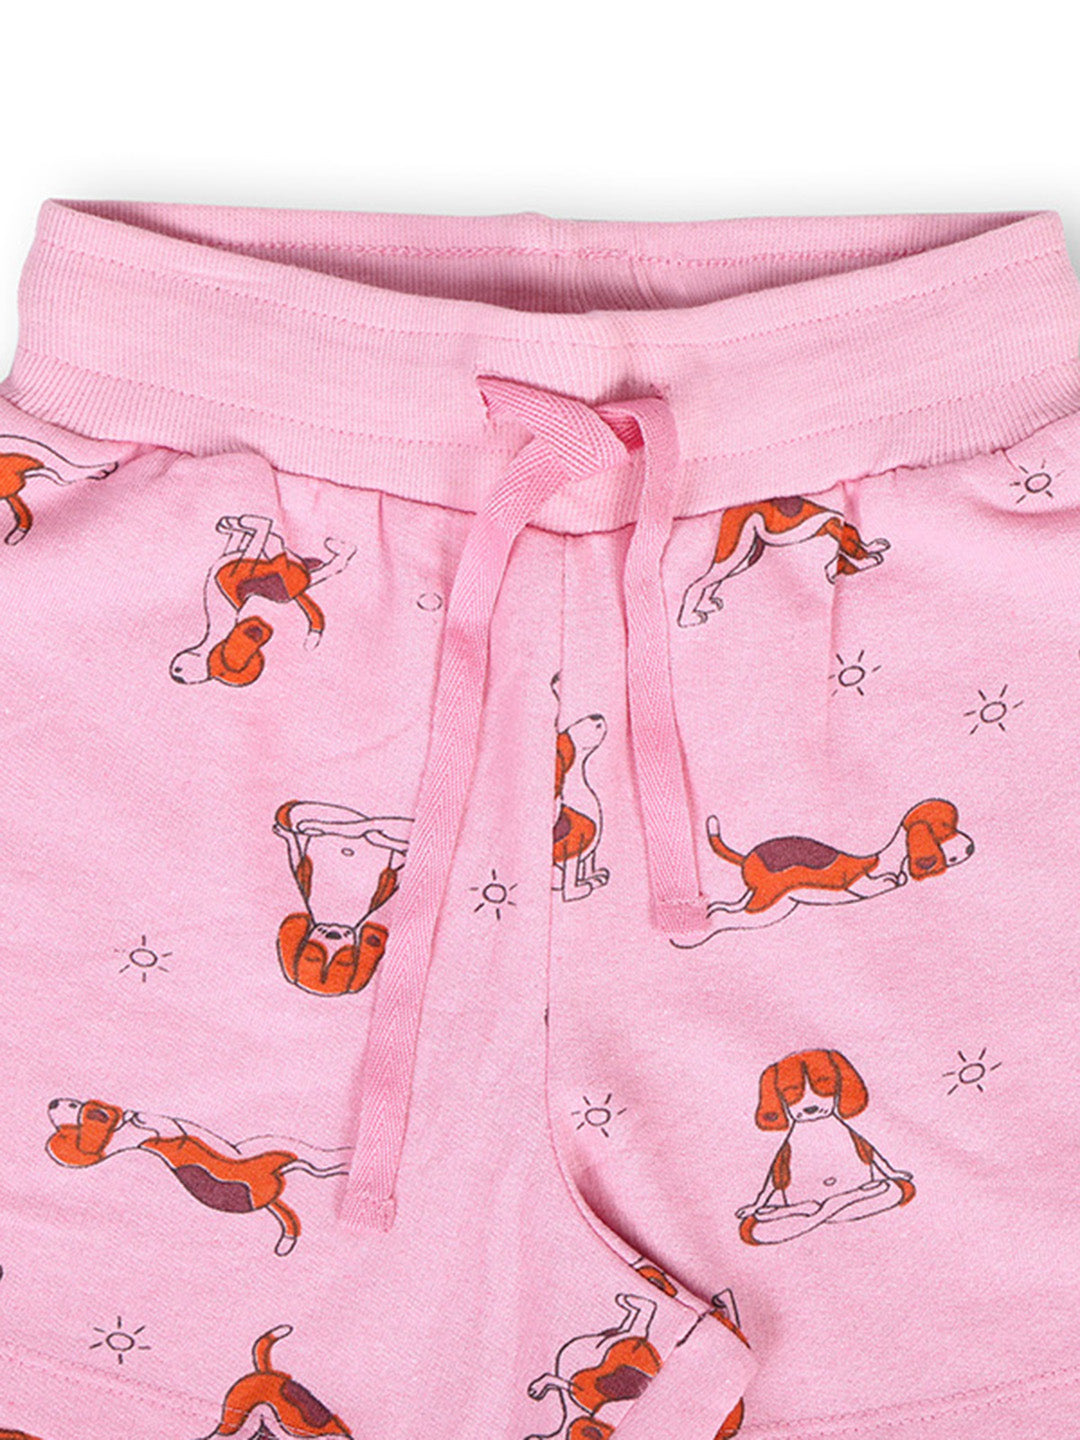 TWGE - Kids Shorts for Girls - Short Pants - Printed Regular Fit Half Pants - Color Pink